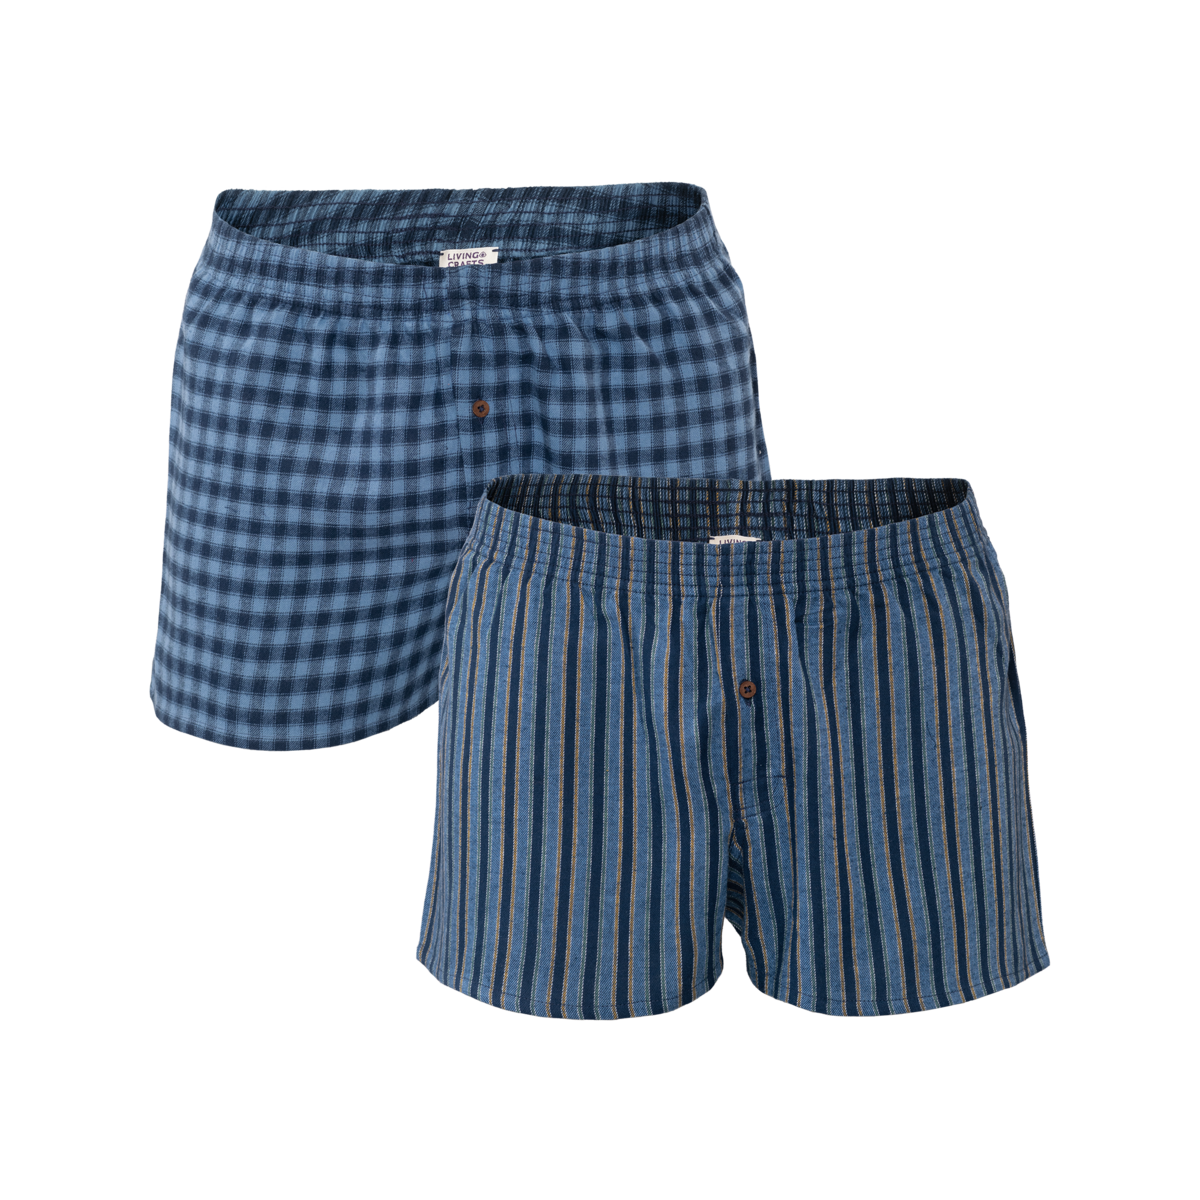 Blue Boxer shorts, pack of 2, BORIS